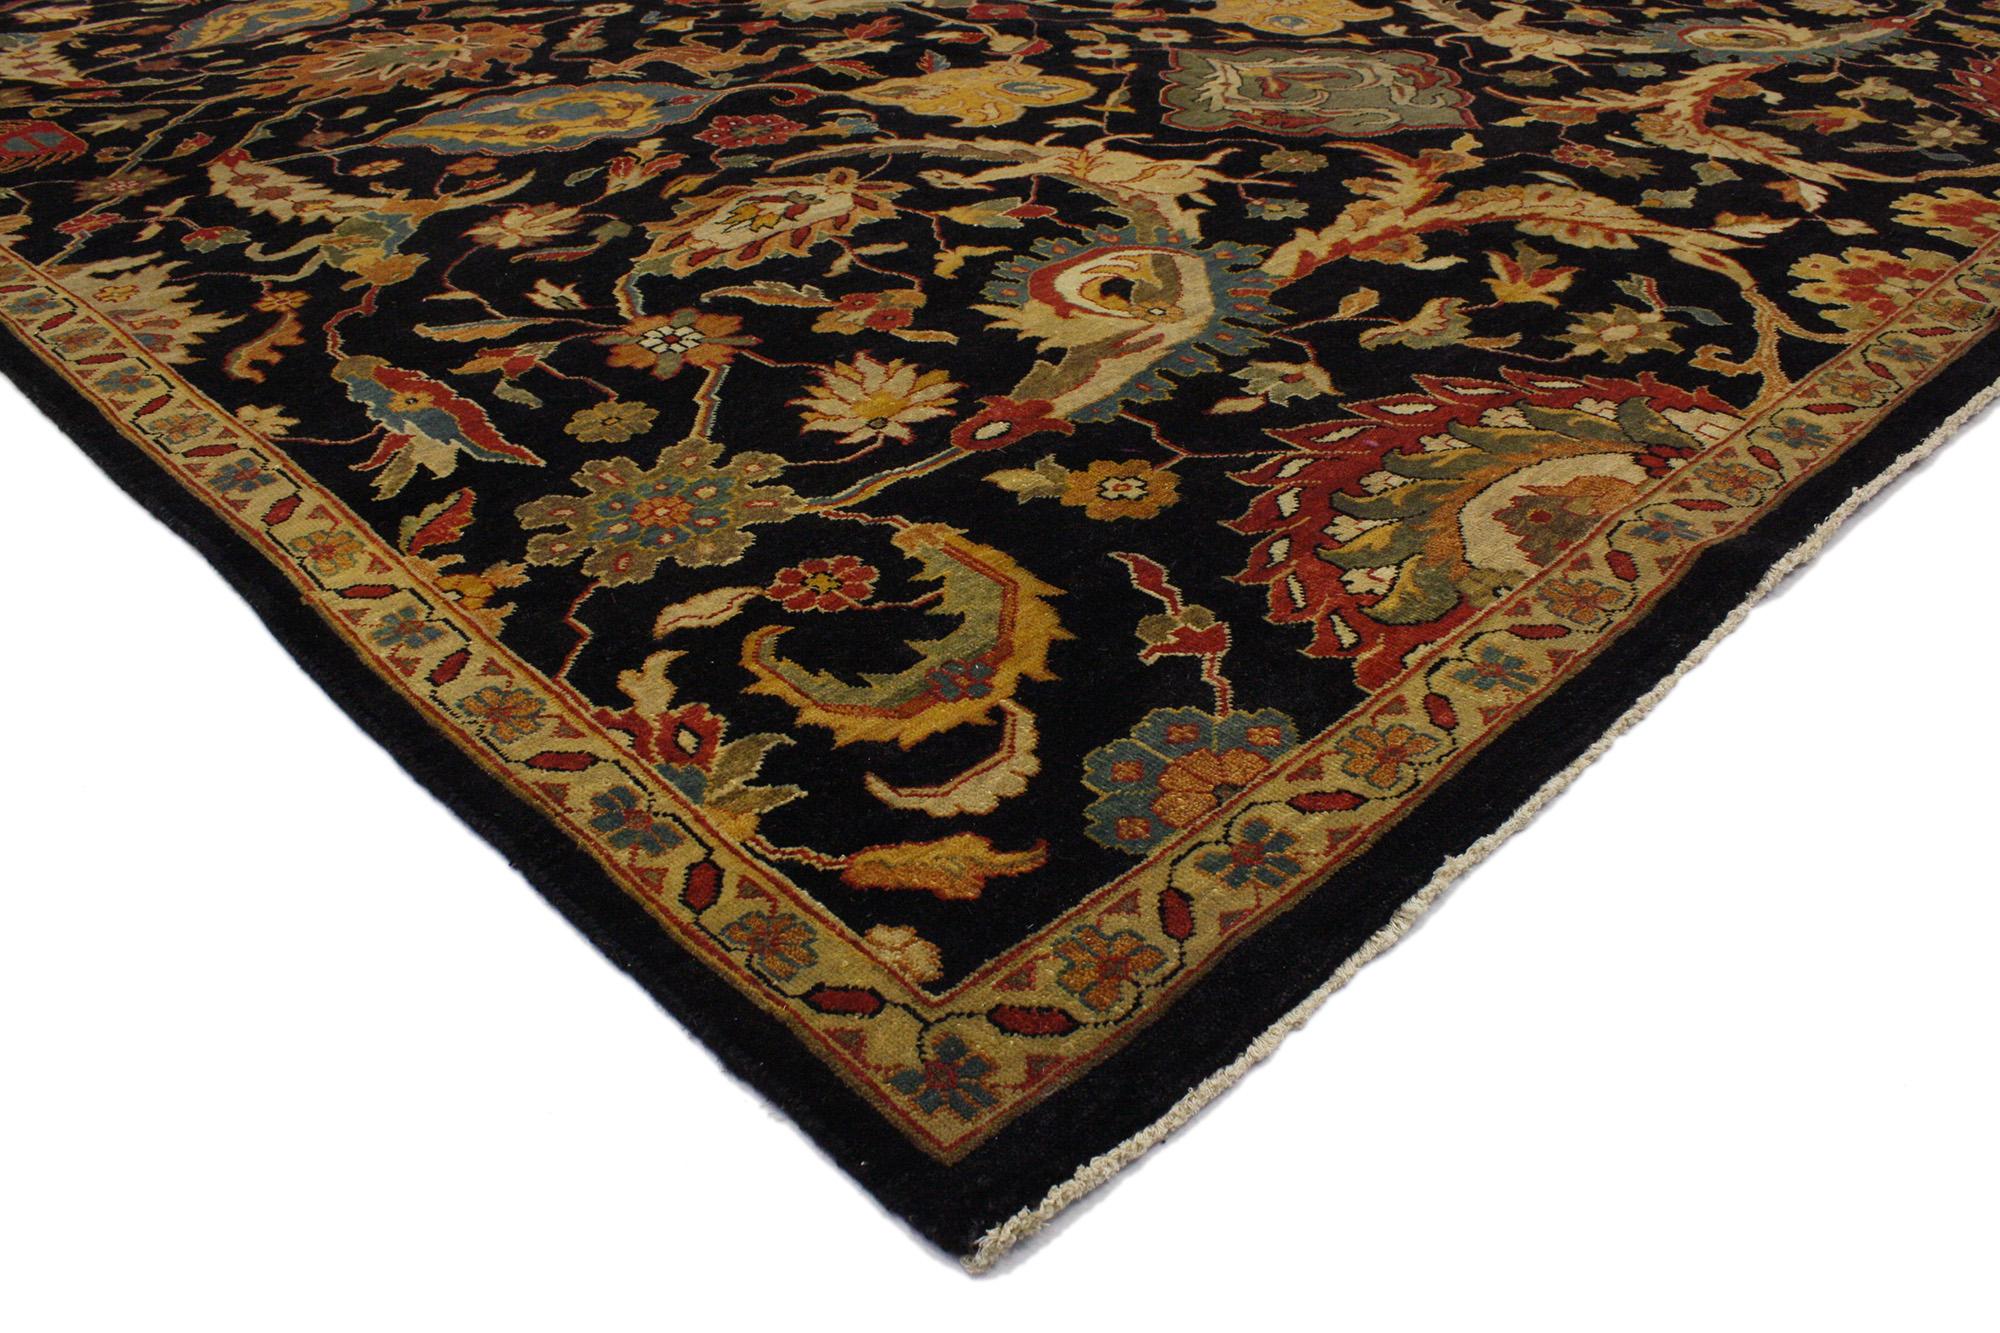 30173 Moderner schwarzer indischer Mahal-Teppich, 08'09 x 11'10. Moderne indische Mahal-Teppiche sind zeitgenössische Interpretationen traditioneller persischer Mahal-Teppiche. Sie zeichnen sich durch komplizierte florale und geometrische Muster mit